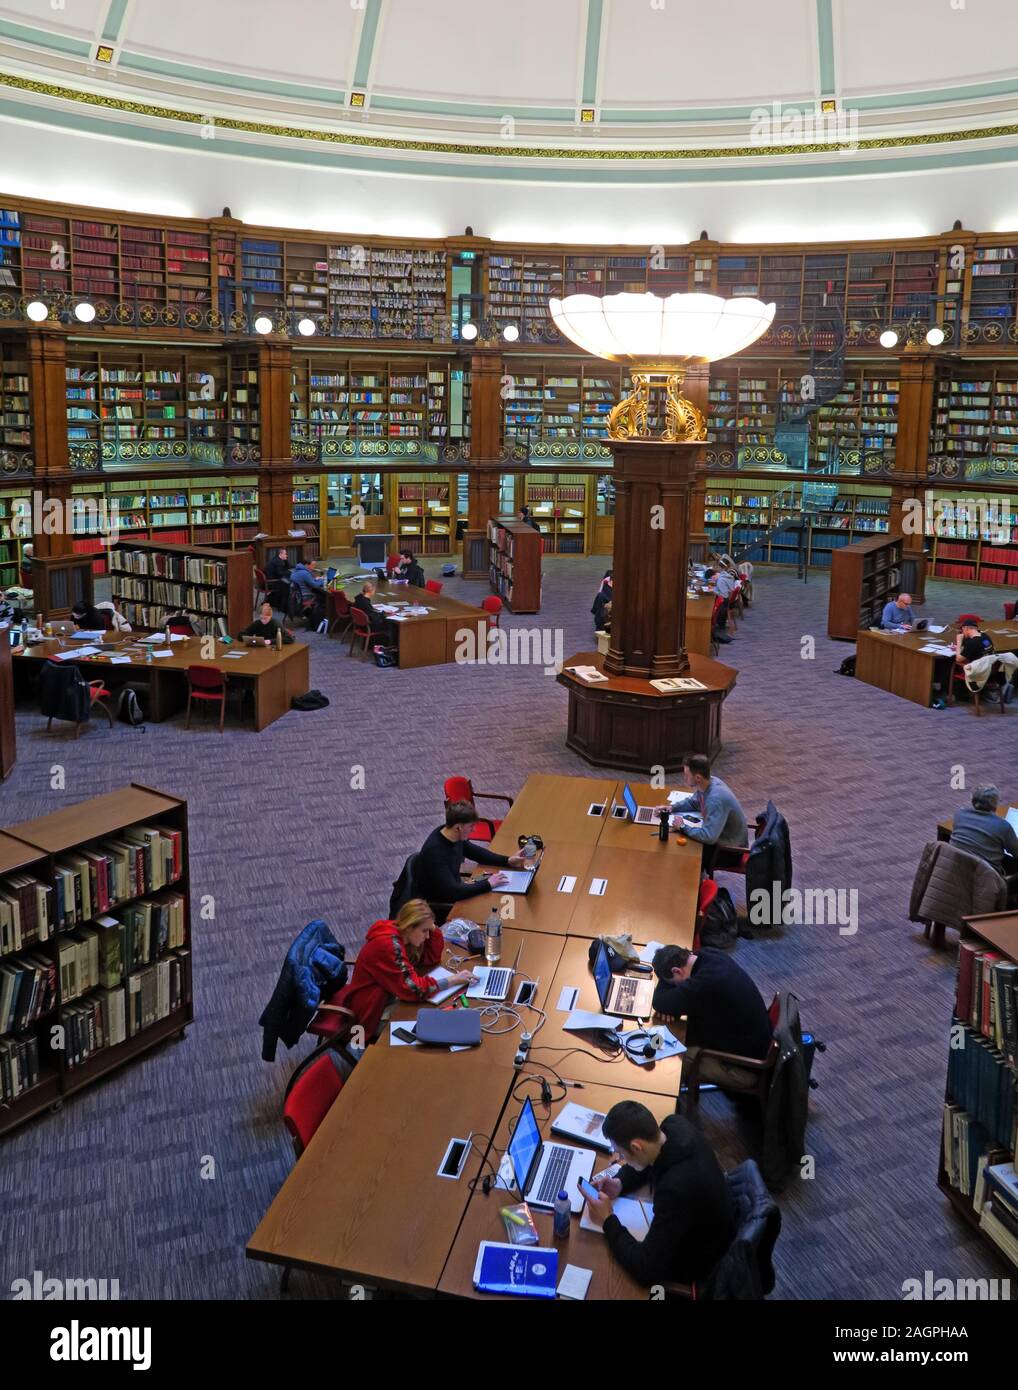 Lecteurs de la bibliothèque centrale de Liverpool, William Brown St, Liverpool, Angleterre, Royaume-Uni, L3 8EW Banque D'Images